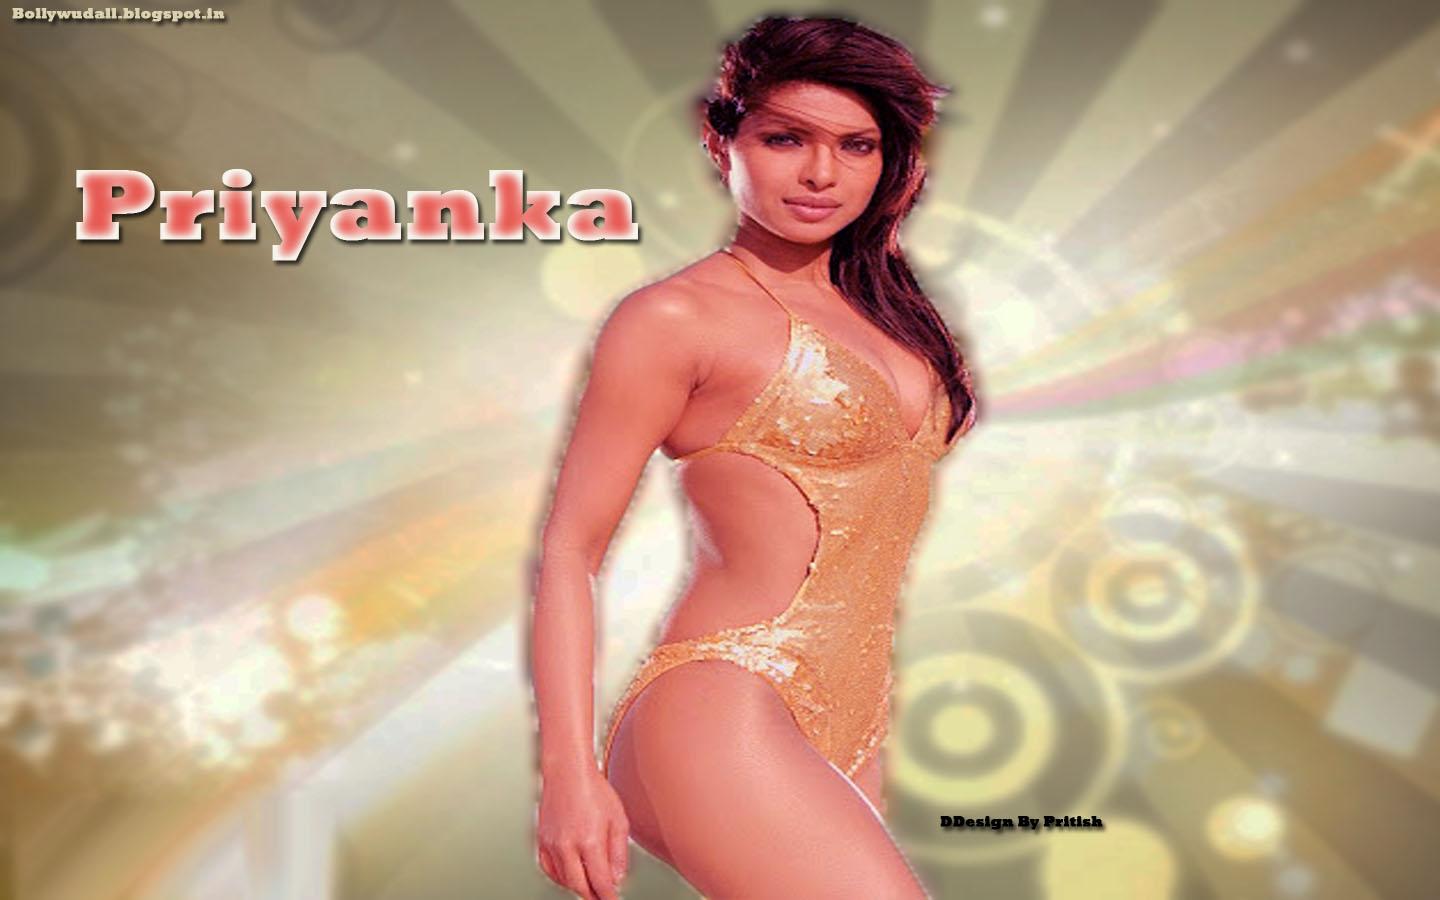 Priyanka Chopra Hot In Bikini Images